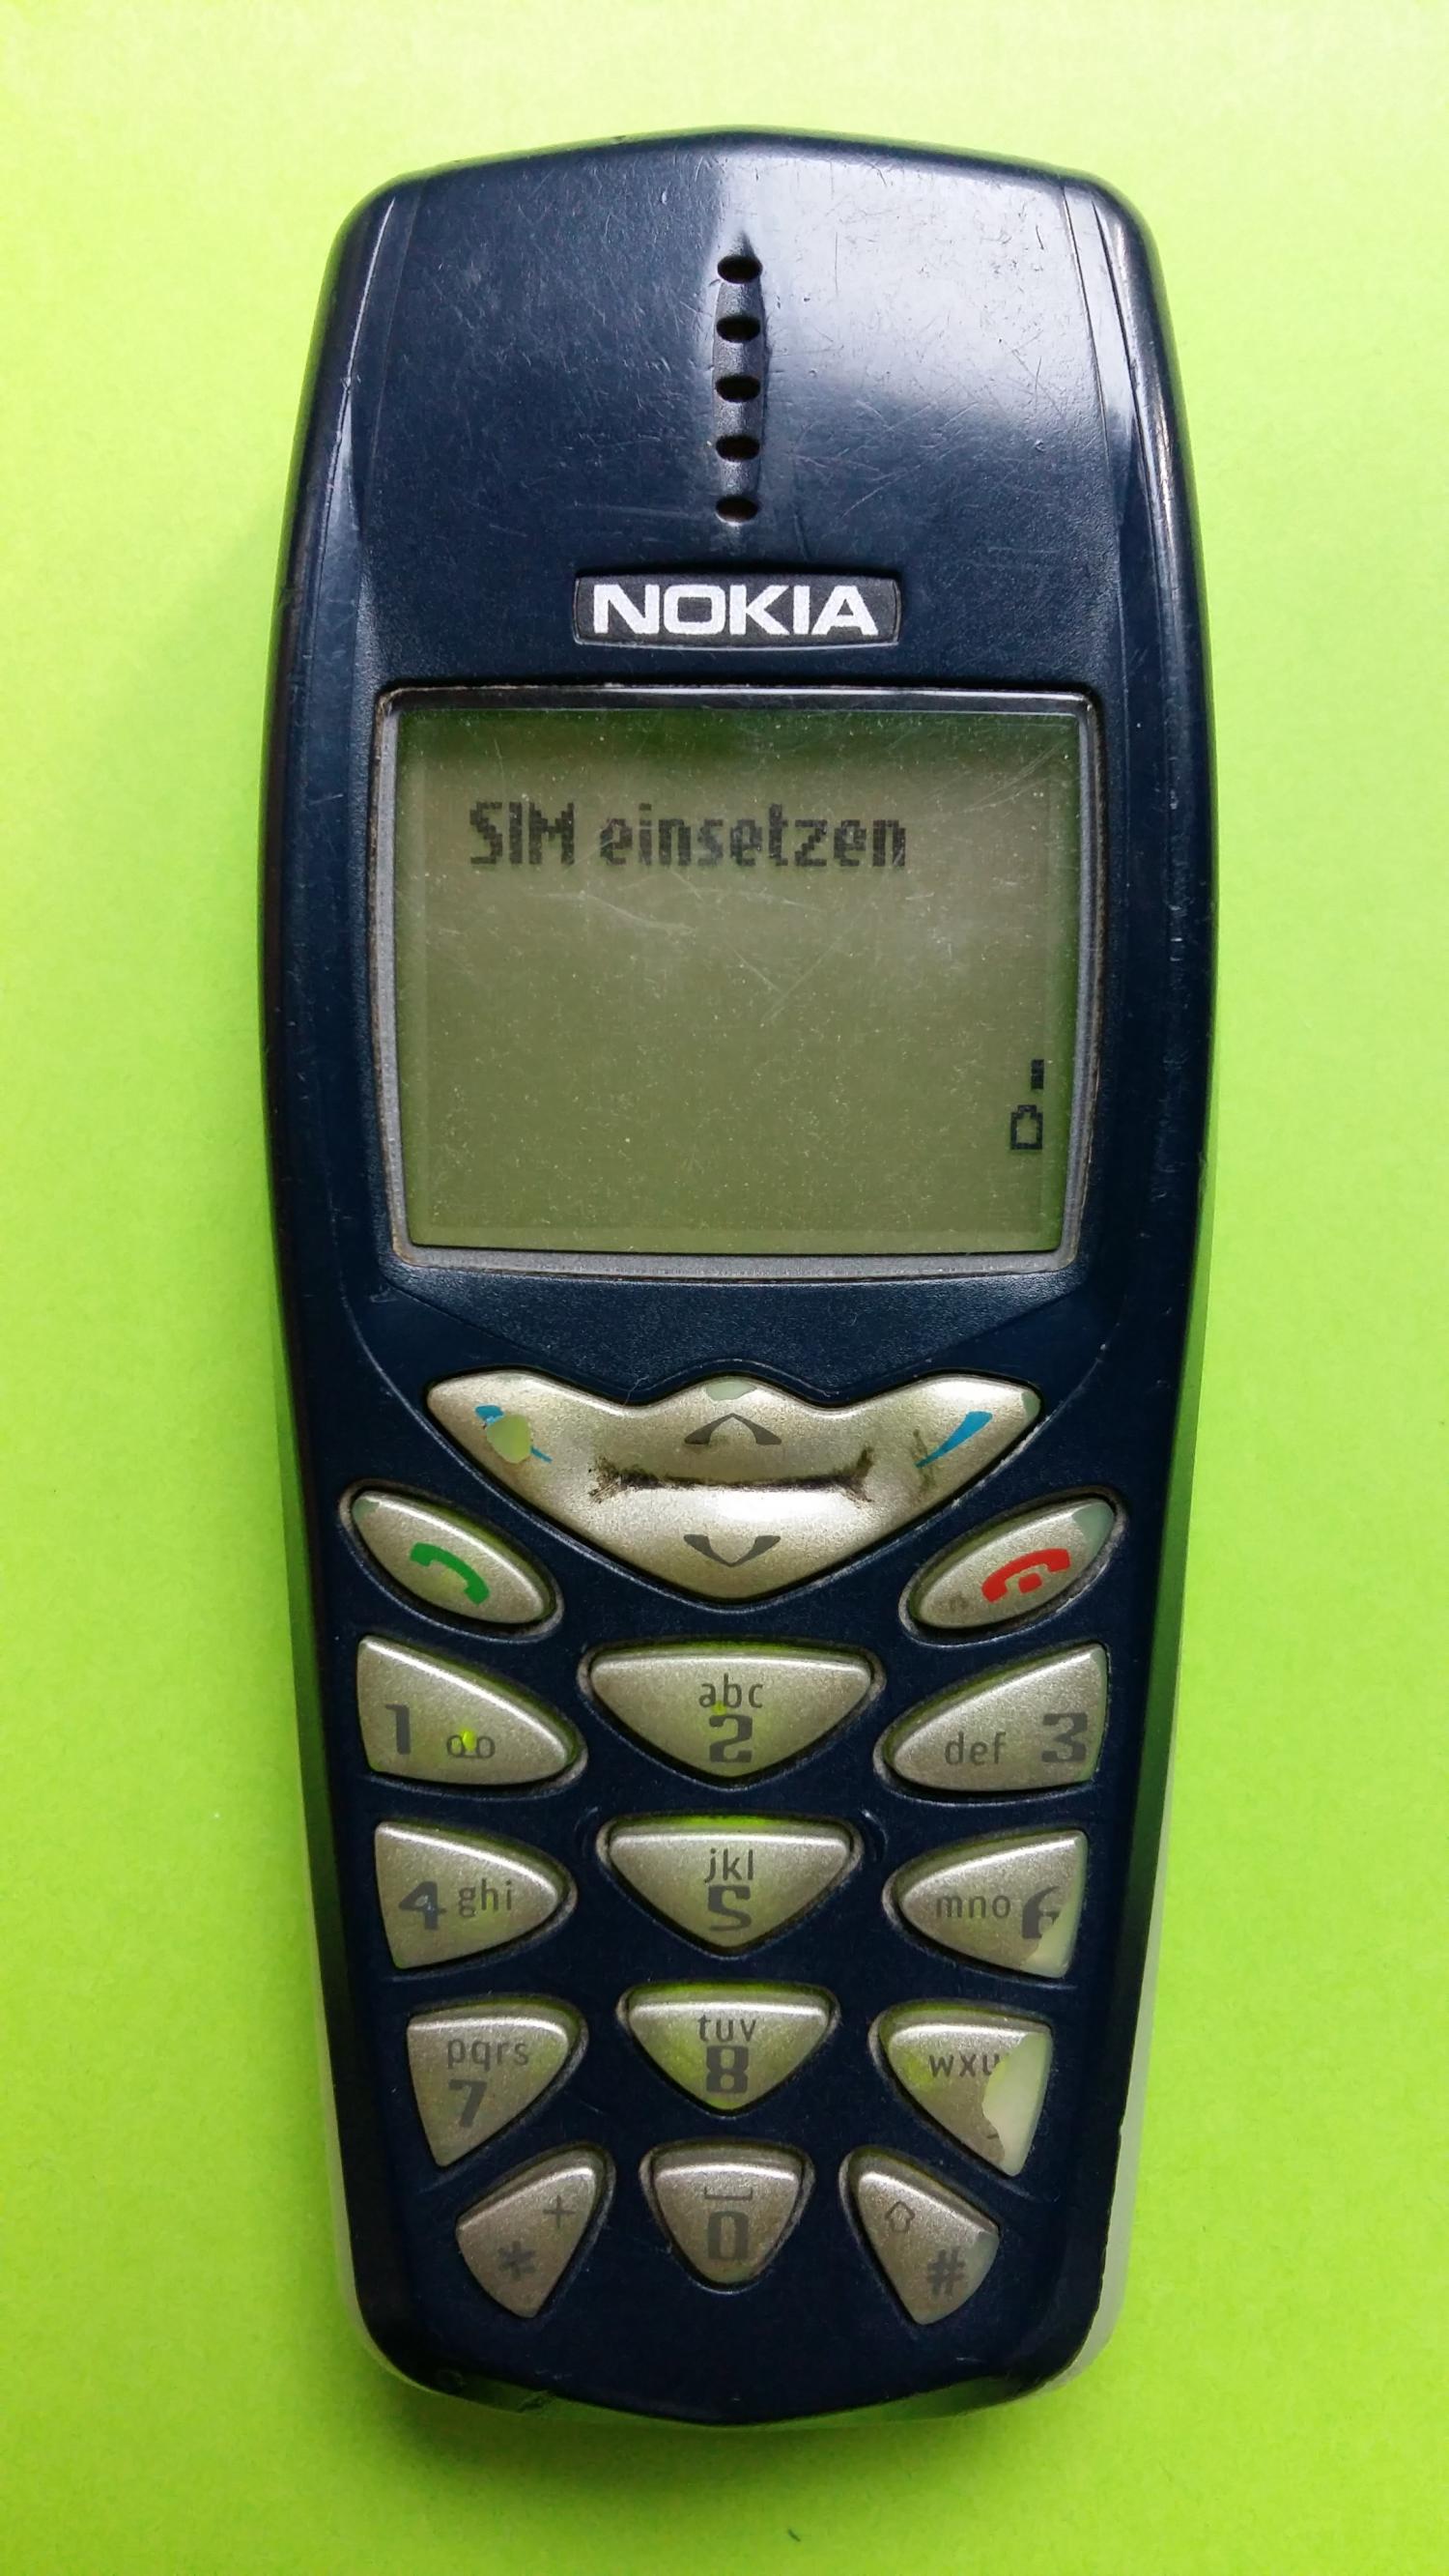 image-7309261-Nokia 3510 (1)1.jpg